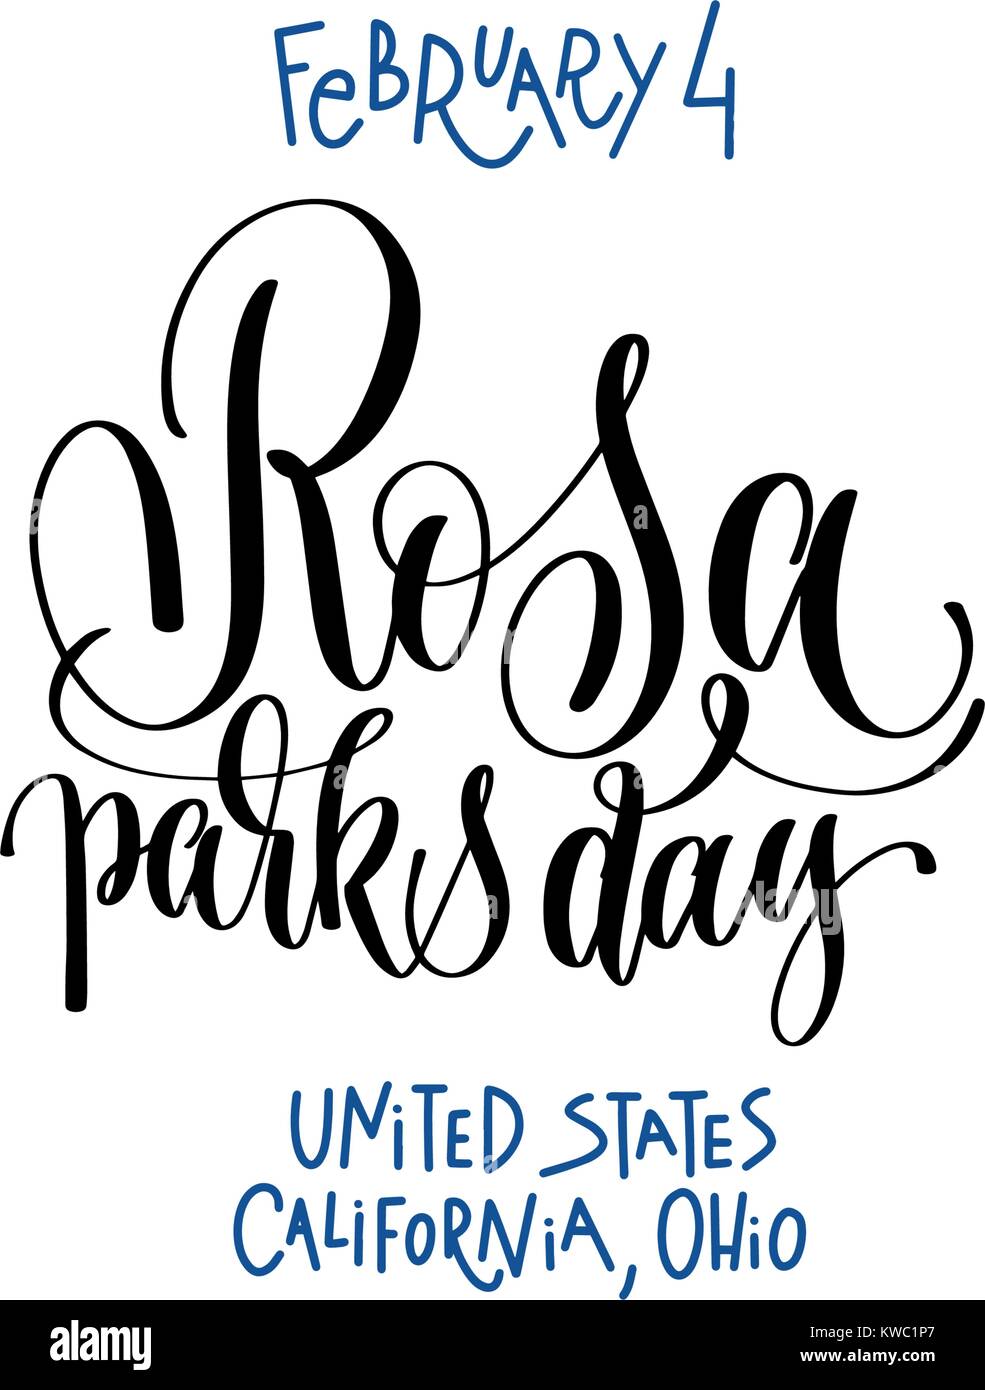 4 février - journée Rosa Parks - États-Unis Californie, l'Ohio Illustration de Vecteur